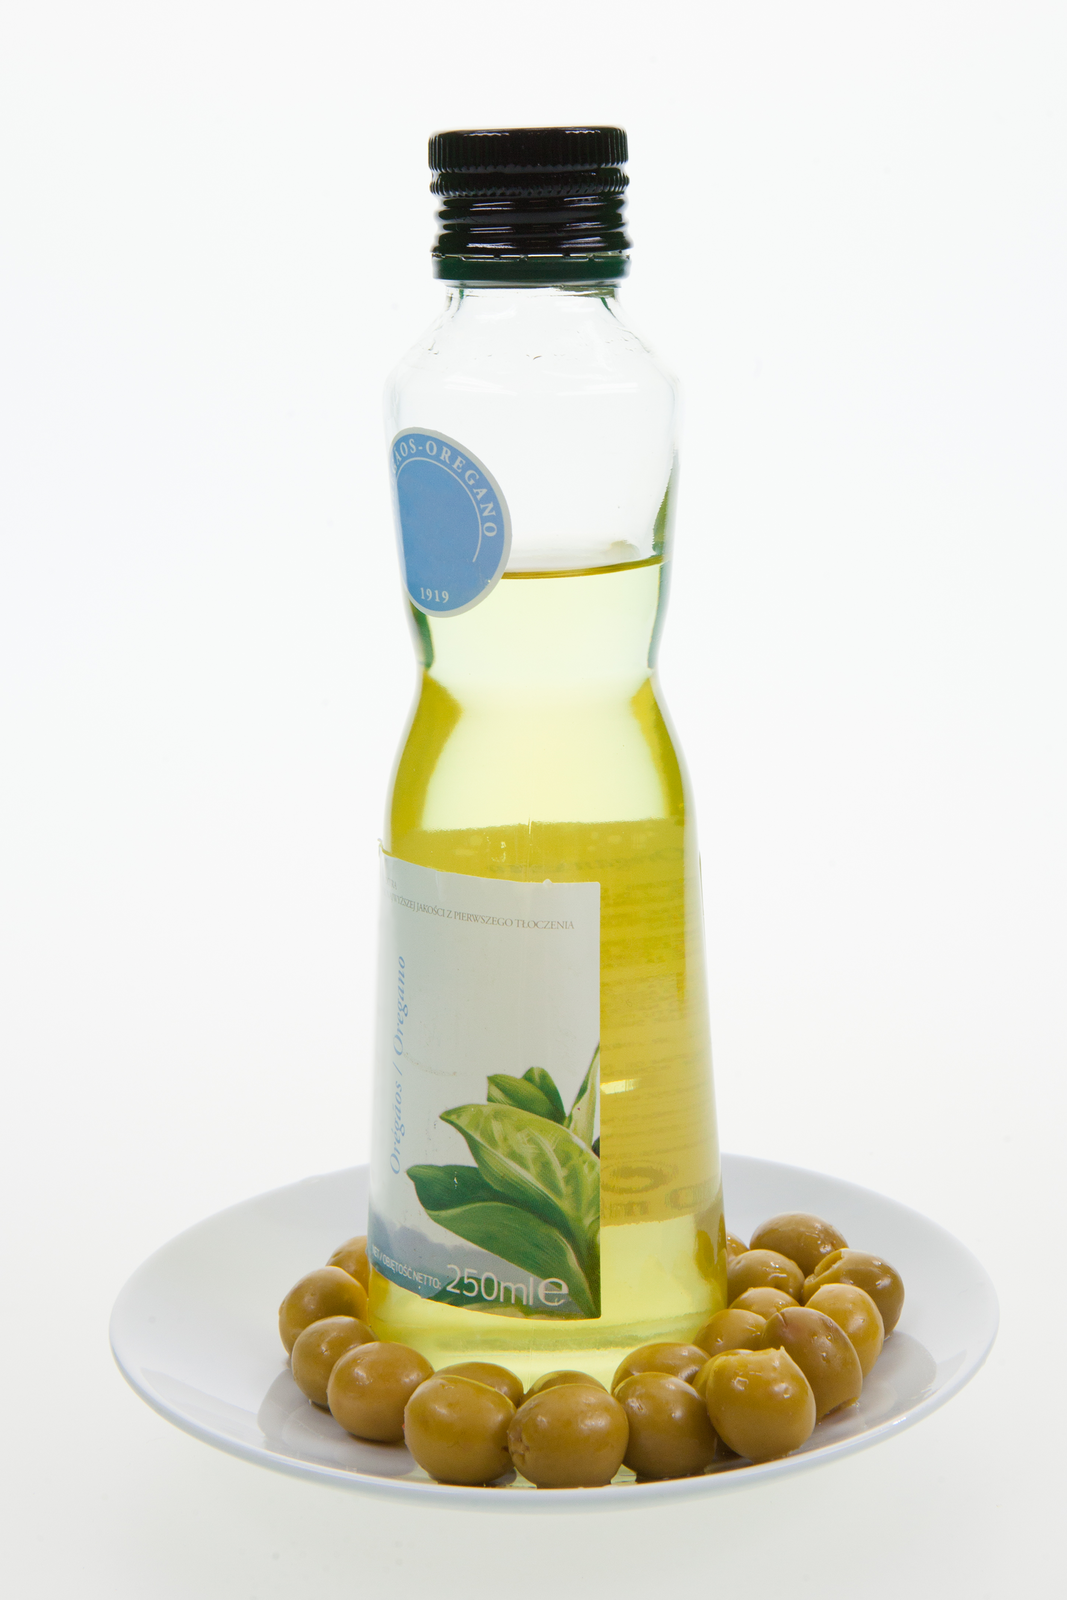 Fotografia przedstawiająca buteleczkę z oliwa z oliwek oraz rozłożone wokół niej liczne zielone oliwki